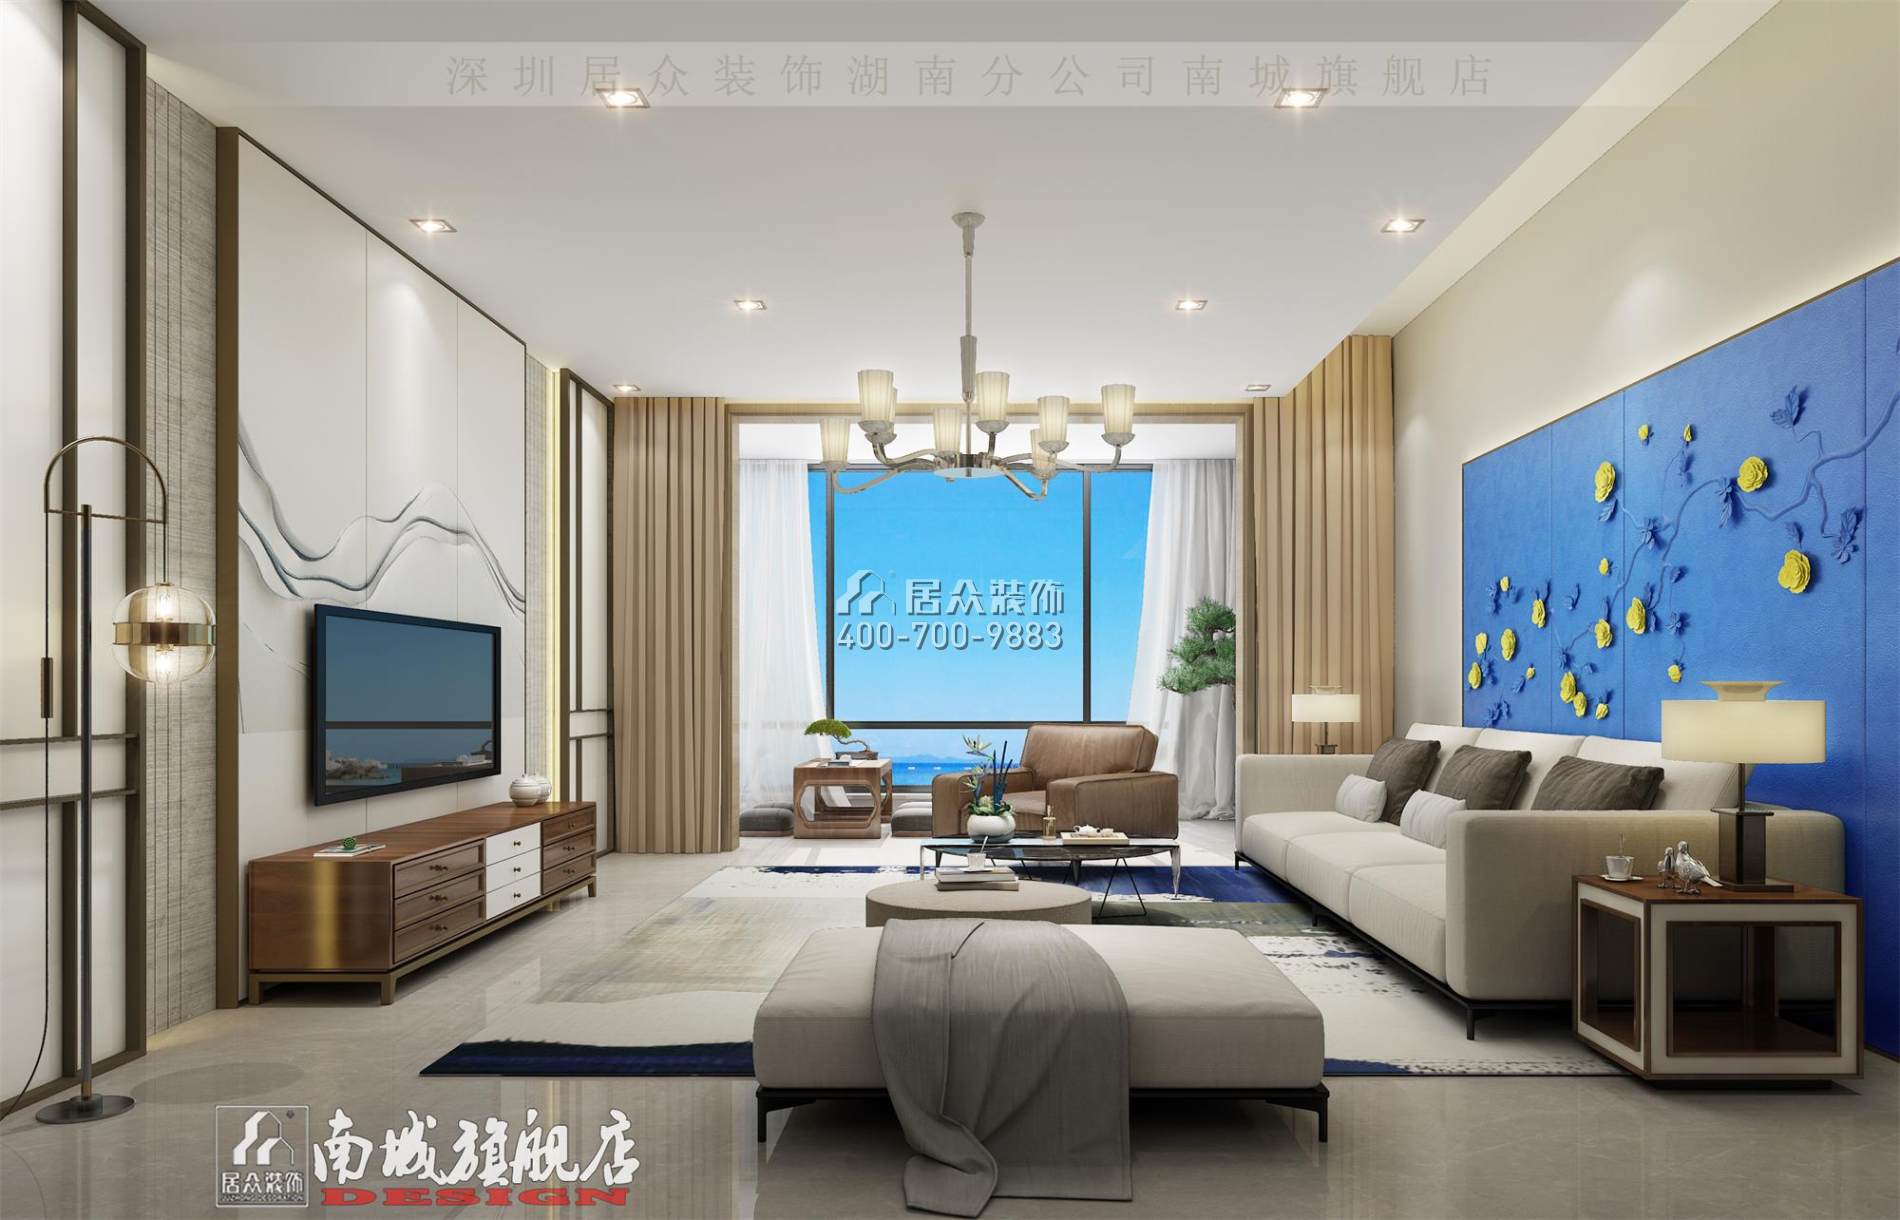 中建江山壹號232平方米中式風格平層戶型客廳裝修效果圖